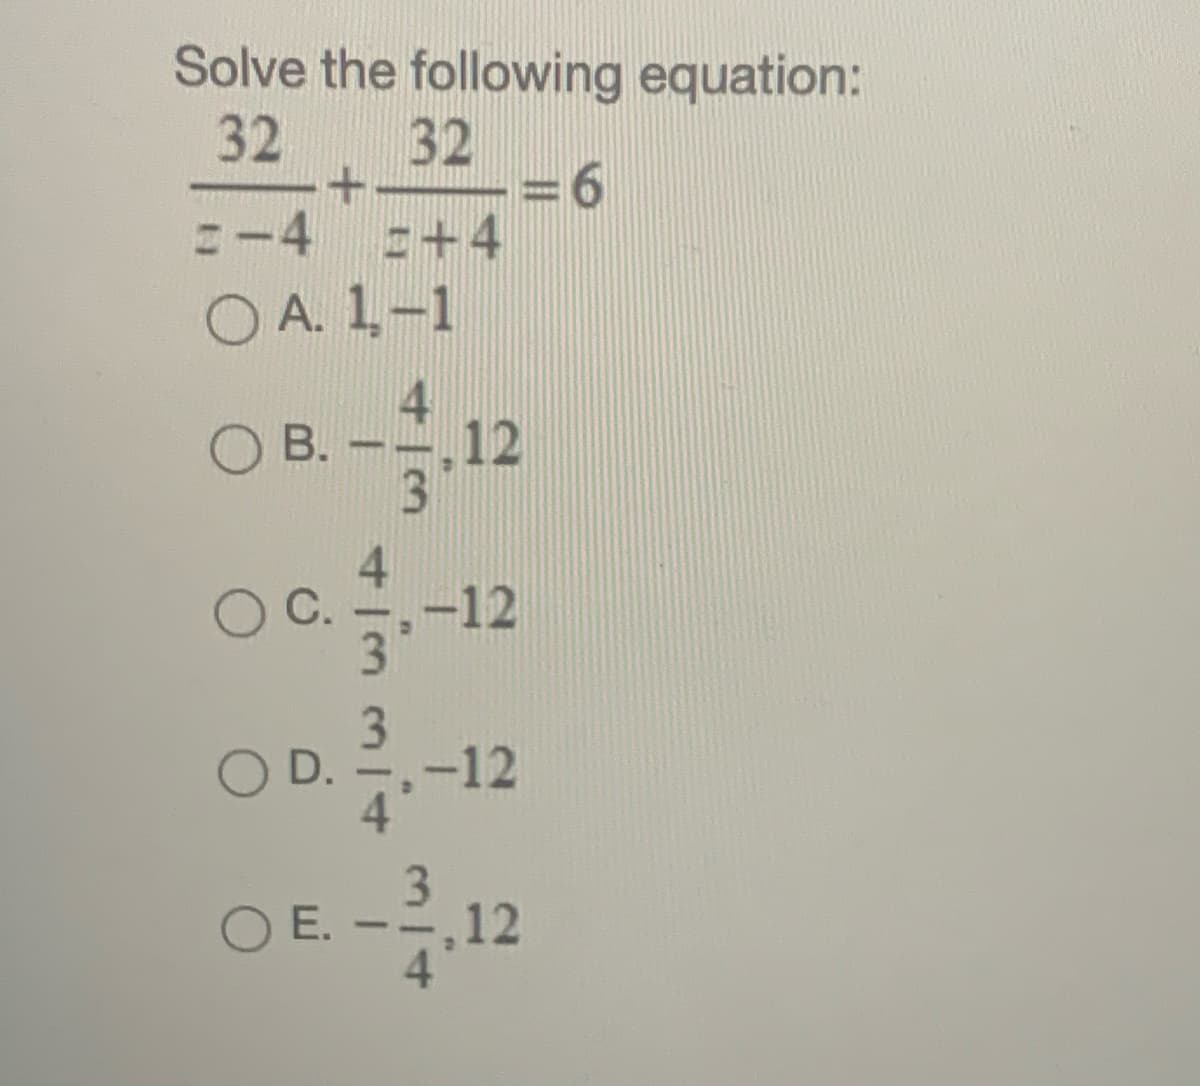 Solve the following equation:
32
6.
E+4
32
:-4
O A. 1-1
OB.
--.12
3.
-12
С.
3.
D.
-12
3.
E. --,12
4.
